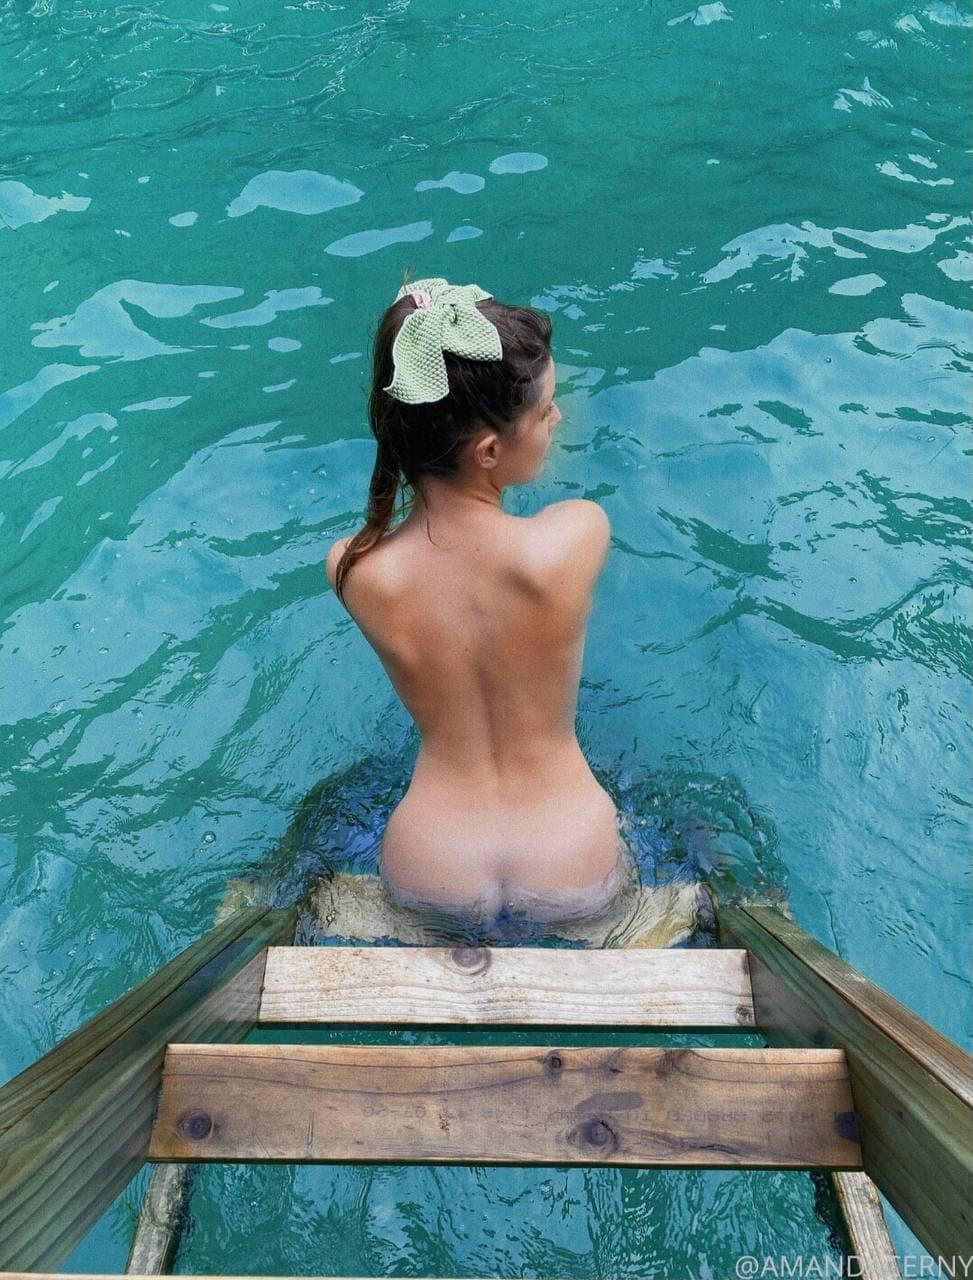 amanda cerny nude swimming onlyfans set leaked EMJHUF